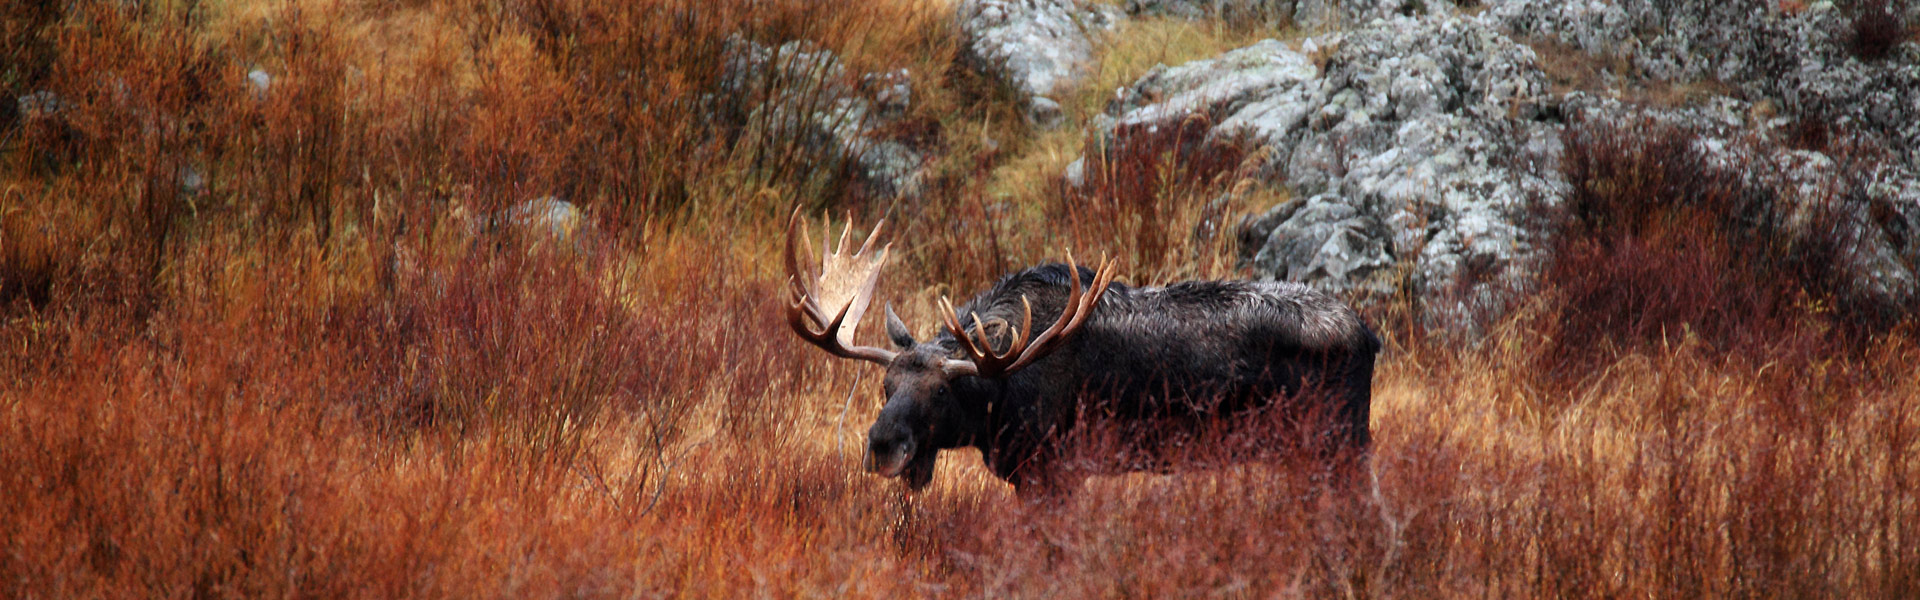 A moose in a field.